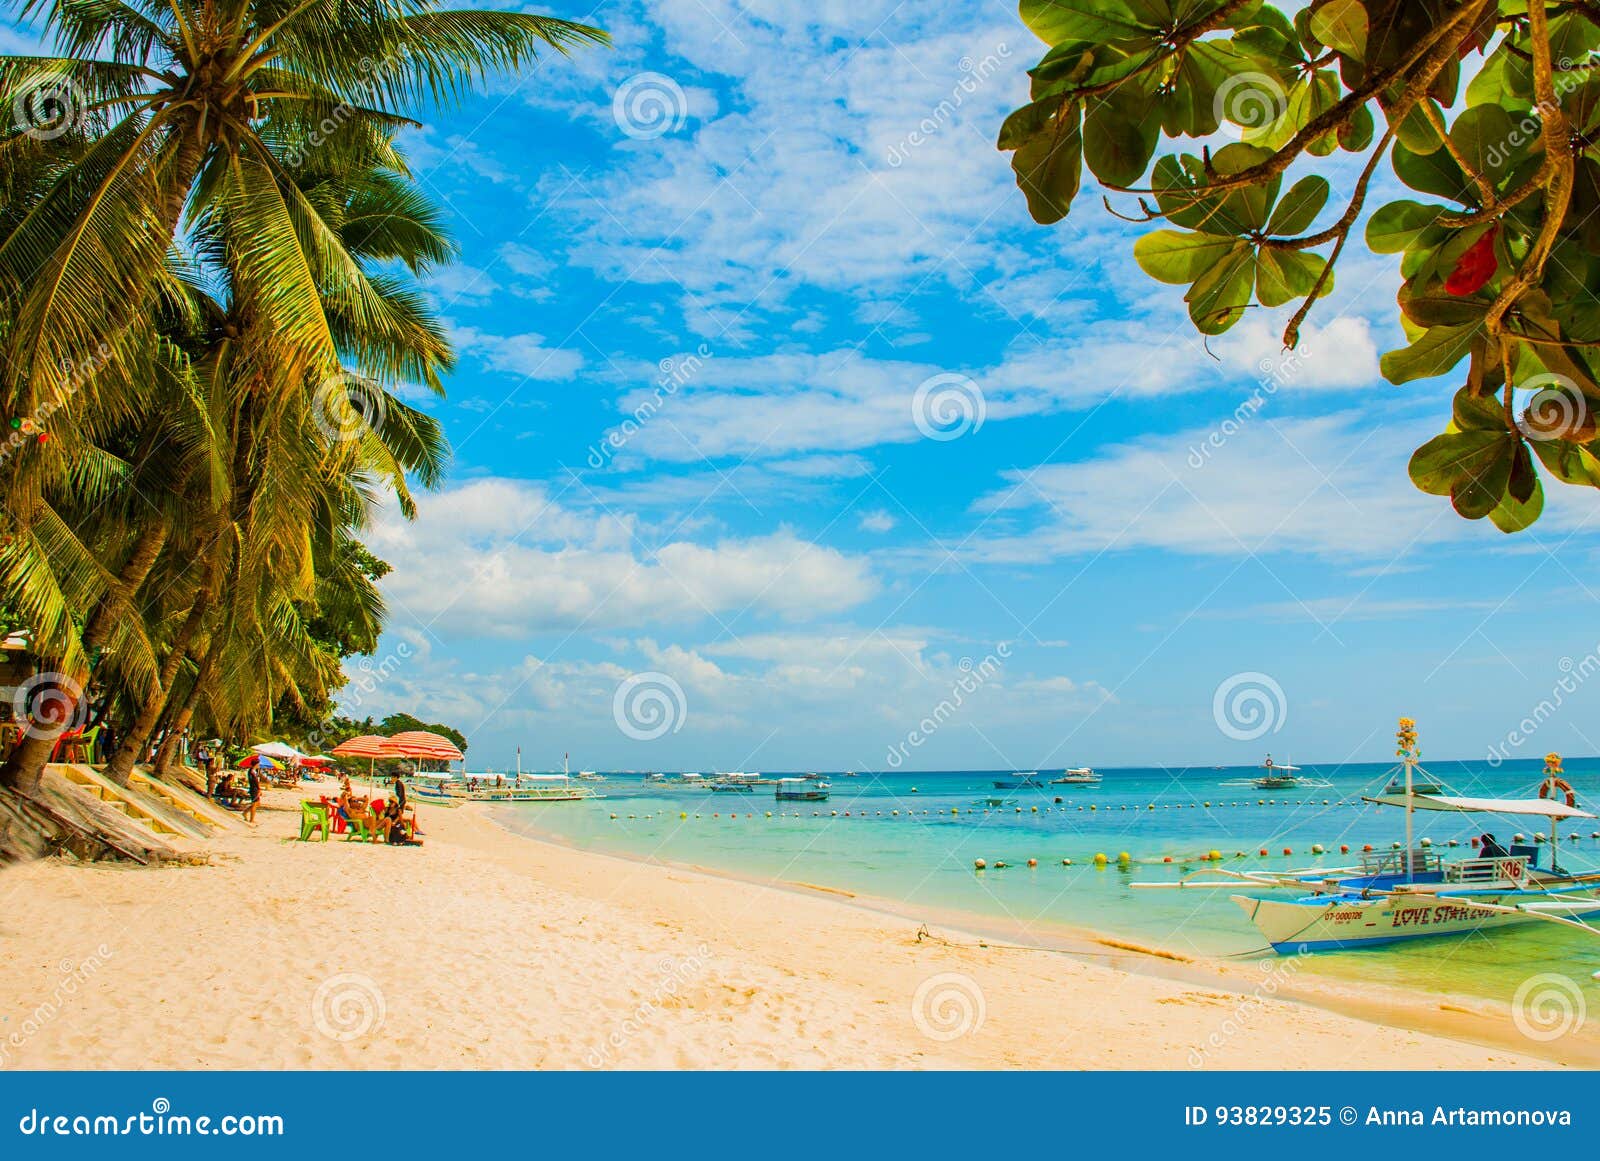 菲律宾保和岛度假旅游风景图片素材-编号15147173-图行天下